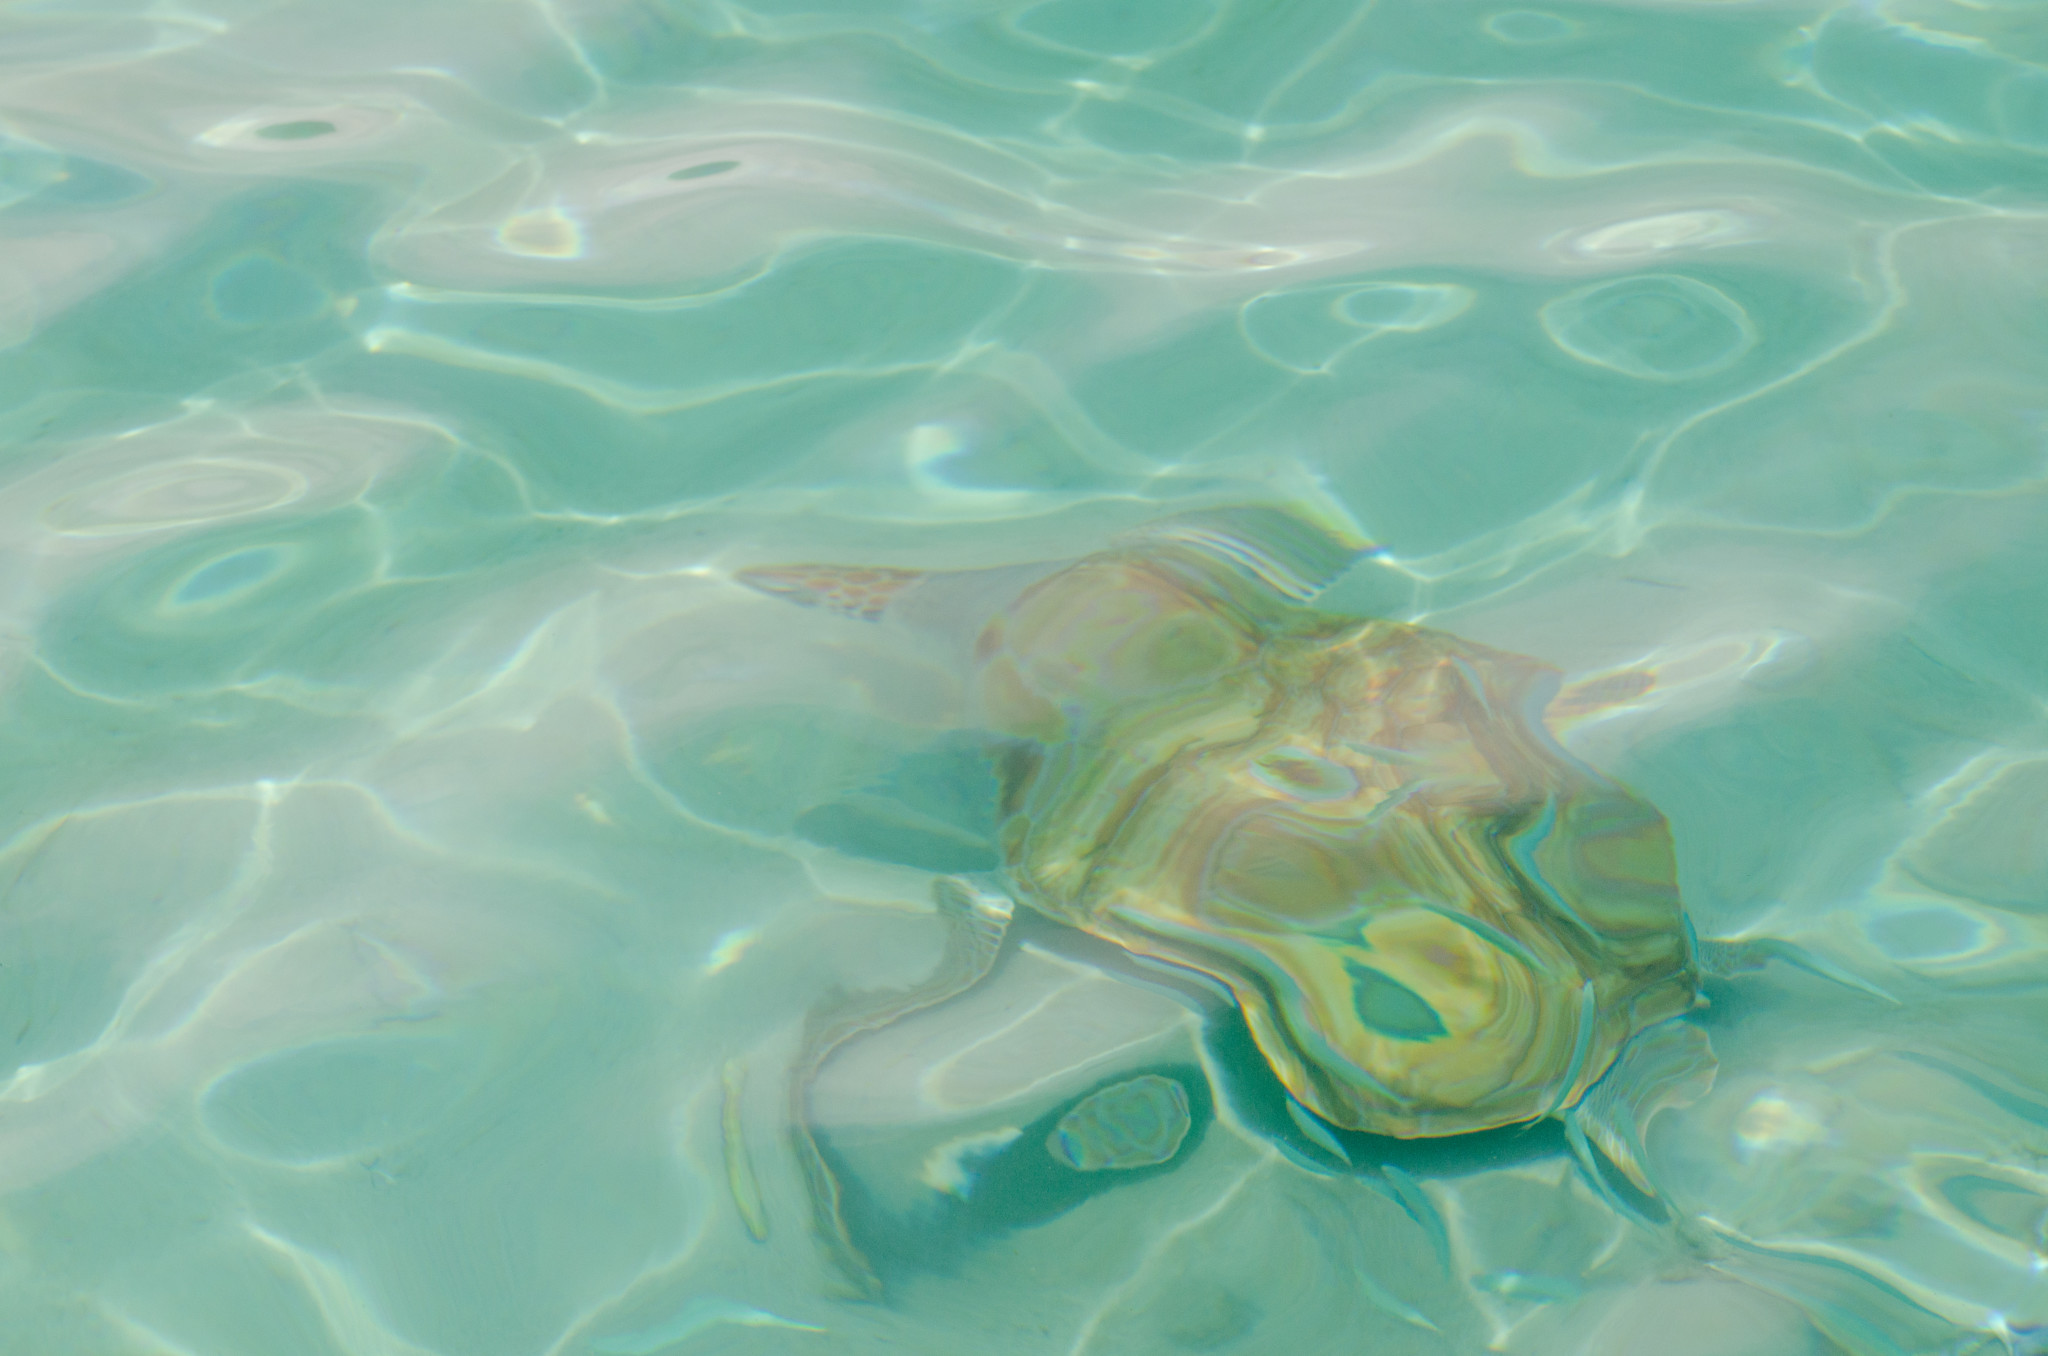 Zu den Curacao Tipps gehört sicher auch das Tauchen mit Schildkröten